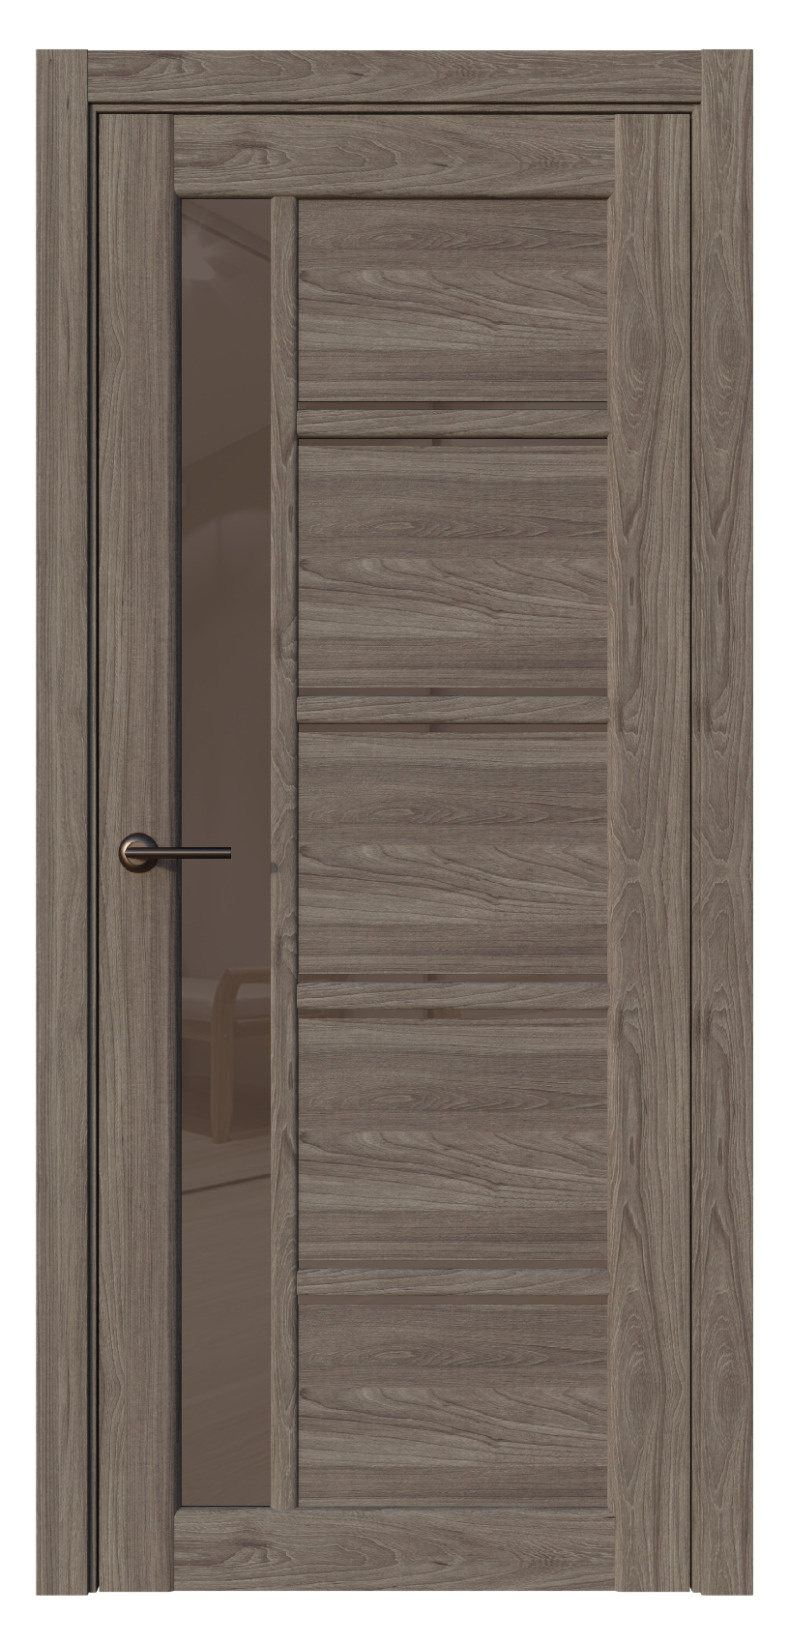 Questdoors Межкомнатная дверь QX42, арт. 17590 - фото №1